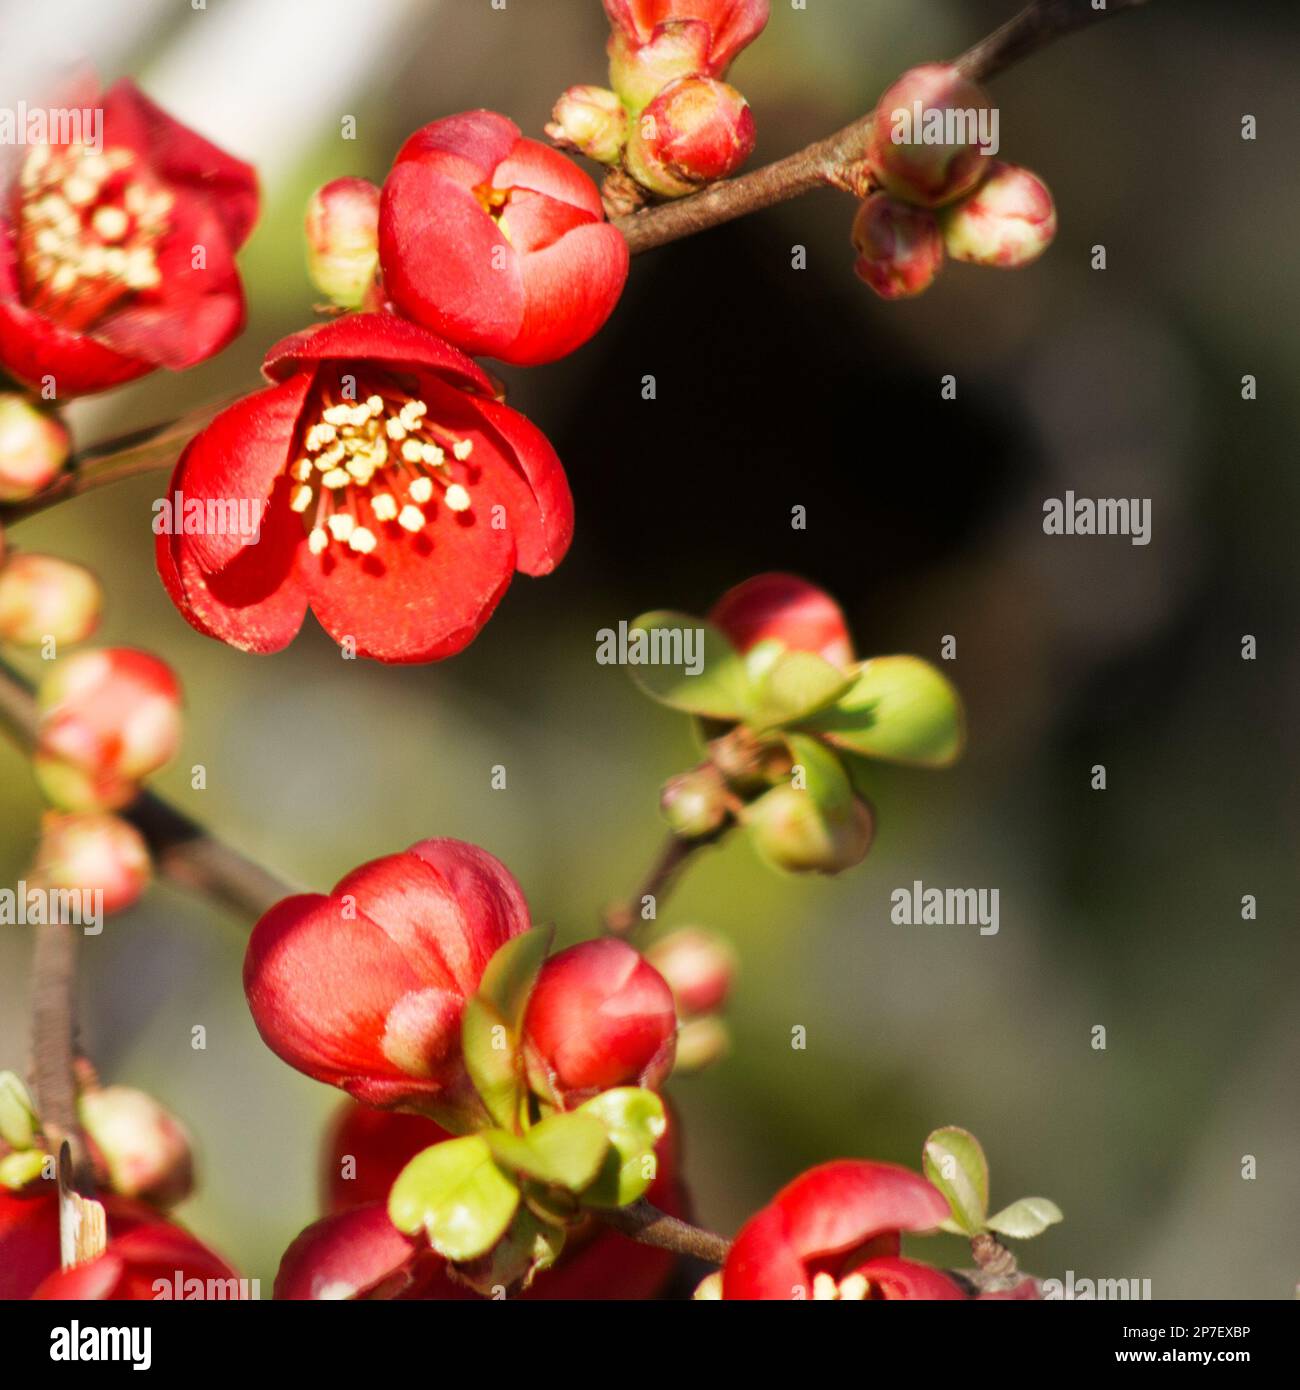 Una fotografia con teleobiettivo di fiori rossi simili a una rosa con stami gialli. I fiori si trovano principalmente nella metà sinistra dell'immagine. Lo sfondo è ou Foto Stock